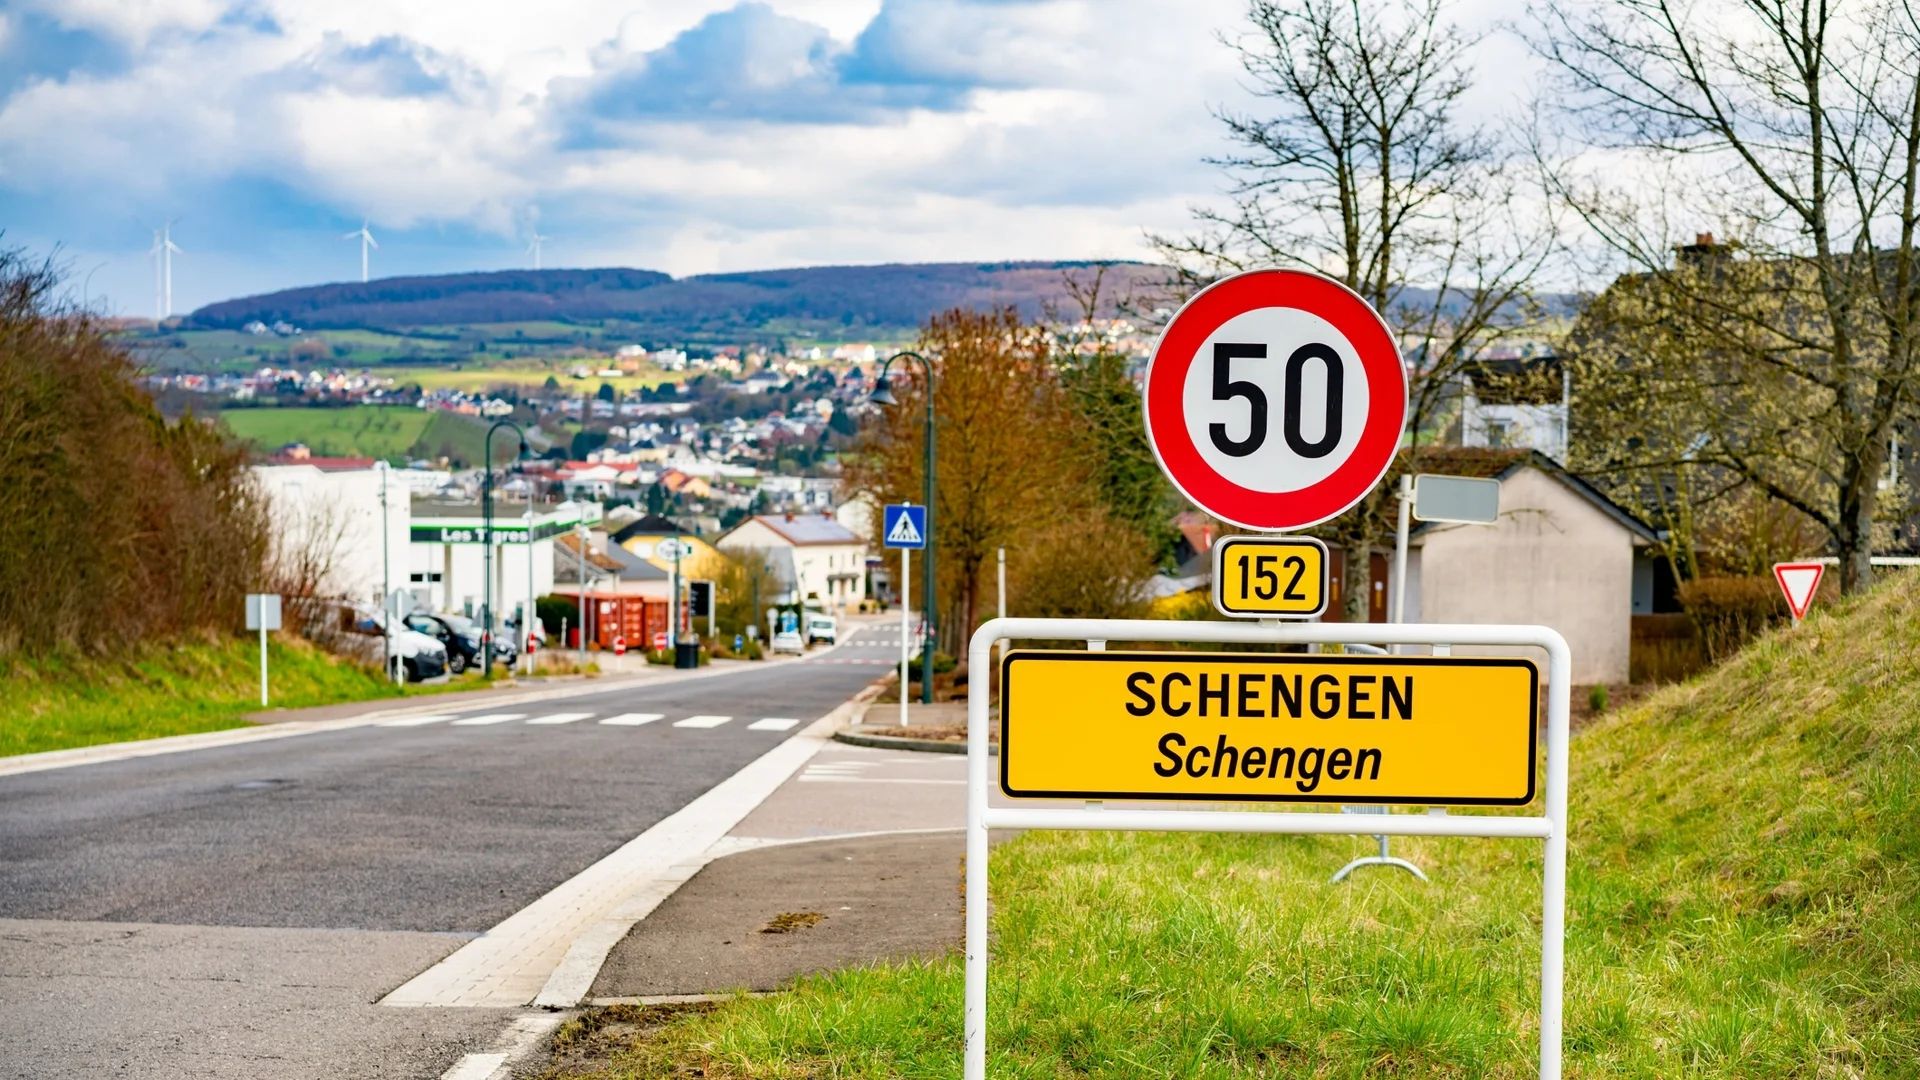 Експерт за "въздушния Шенген": Непрофесионално говорене от някои политици